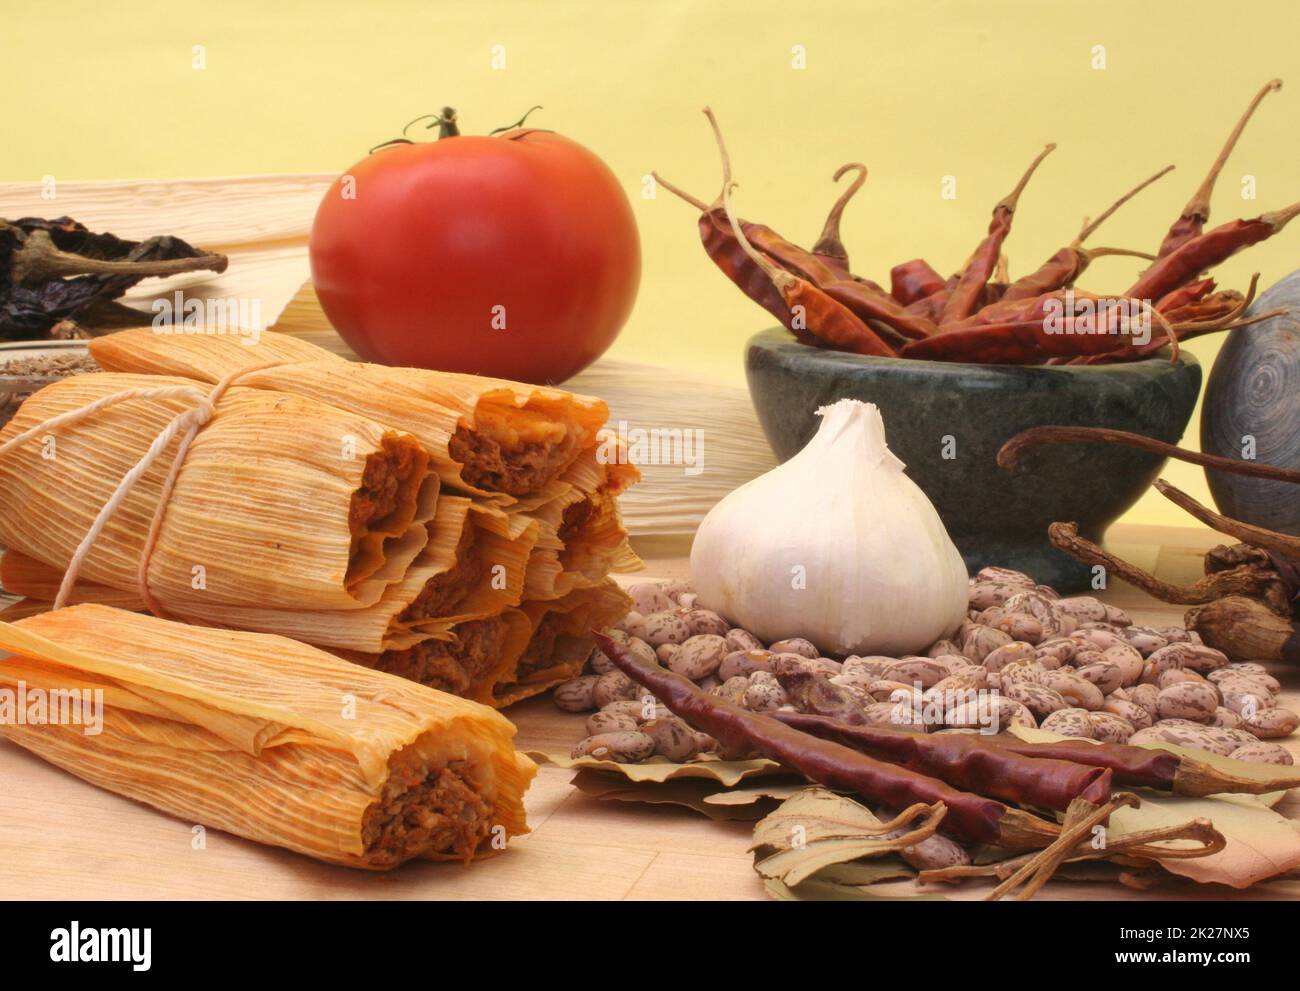 Tamales mit Knoblauch, Bohnen und Tomate auf gelbem Hintergrund Stockfoto